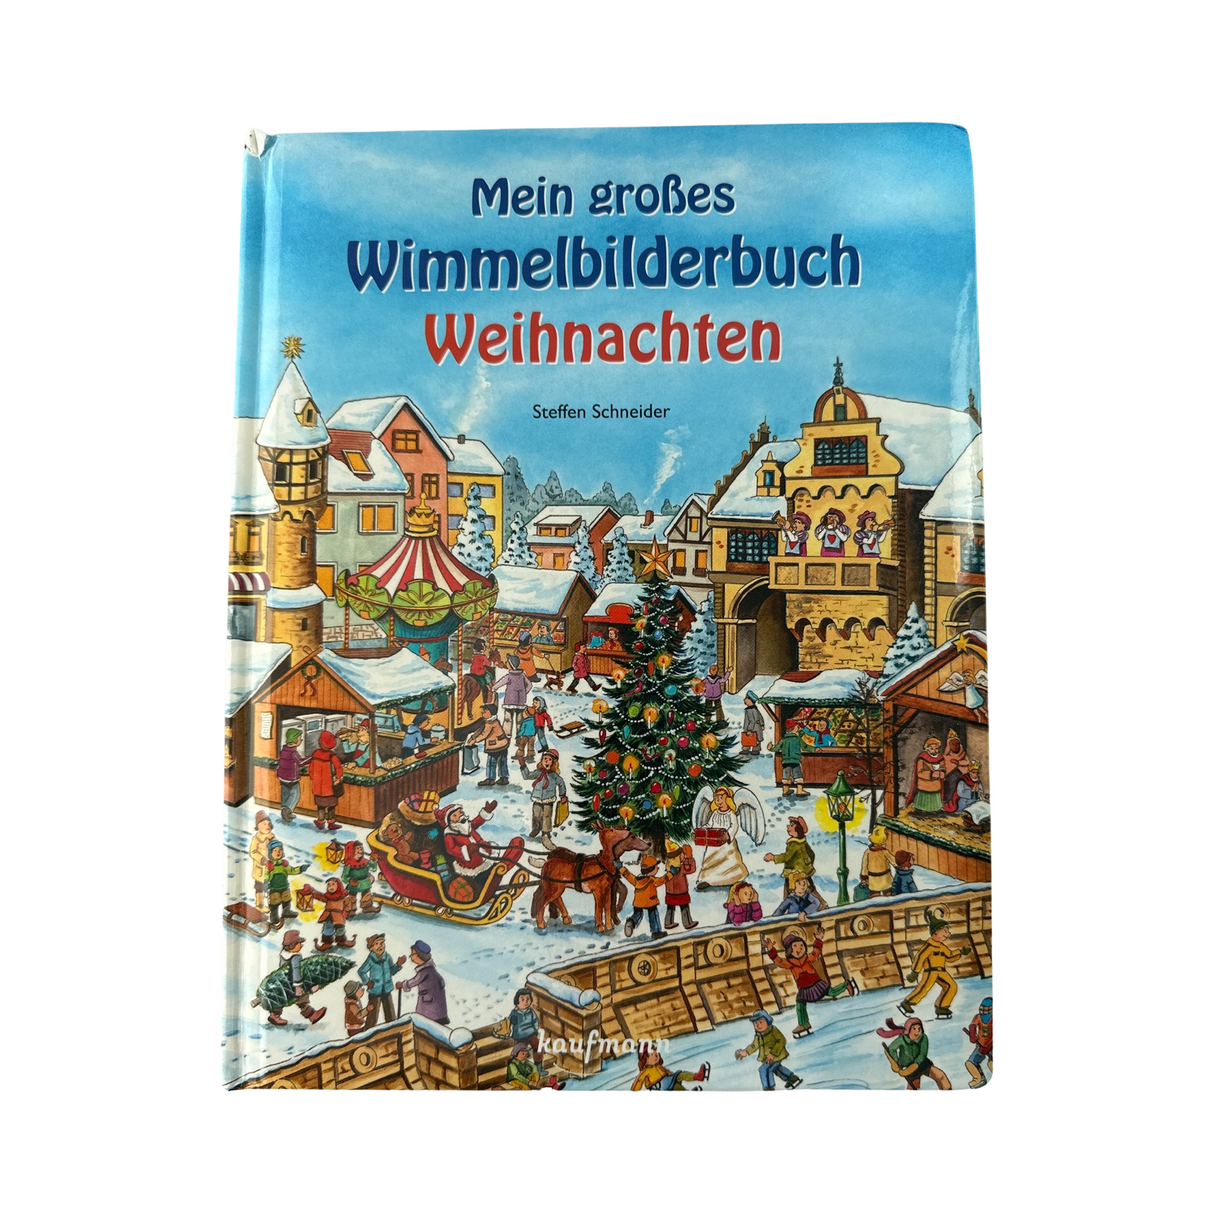 Buch "Mein grosses Wimmelbuch Weihnachten"